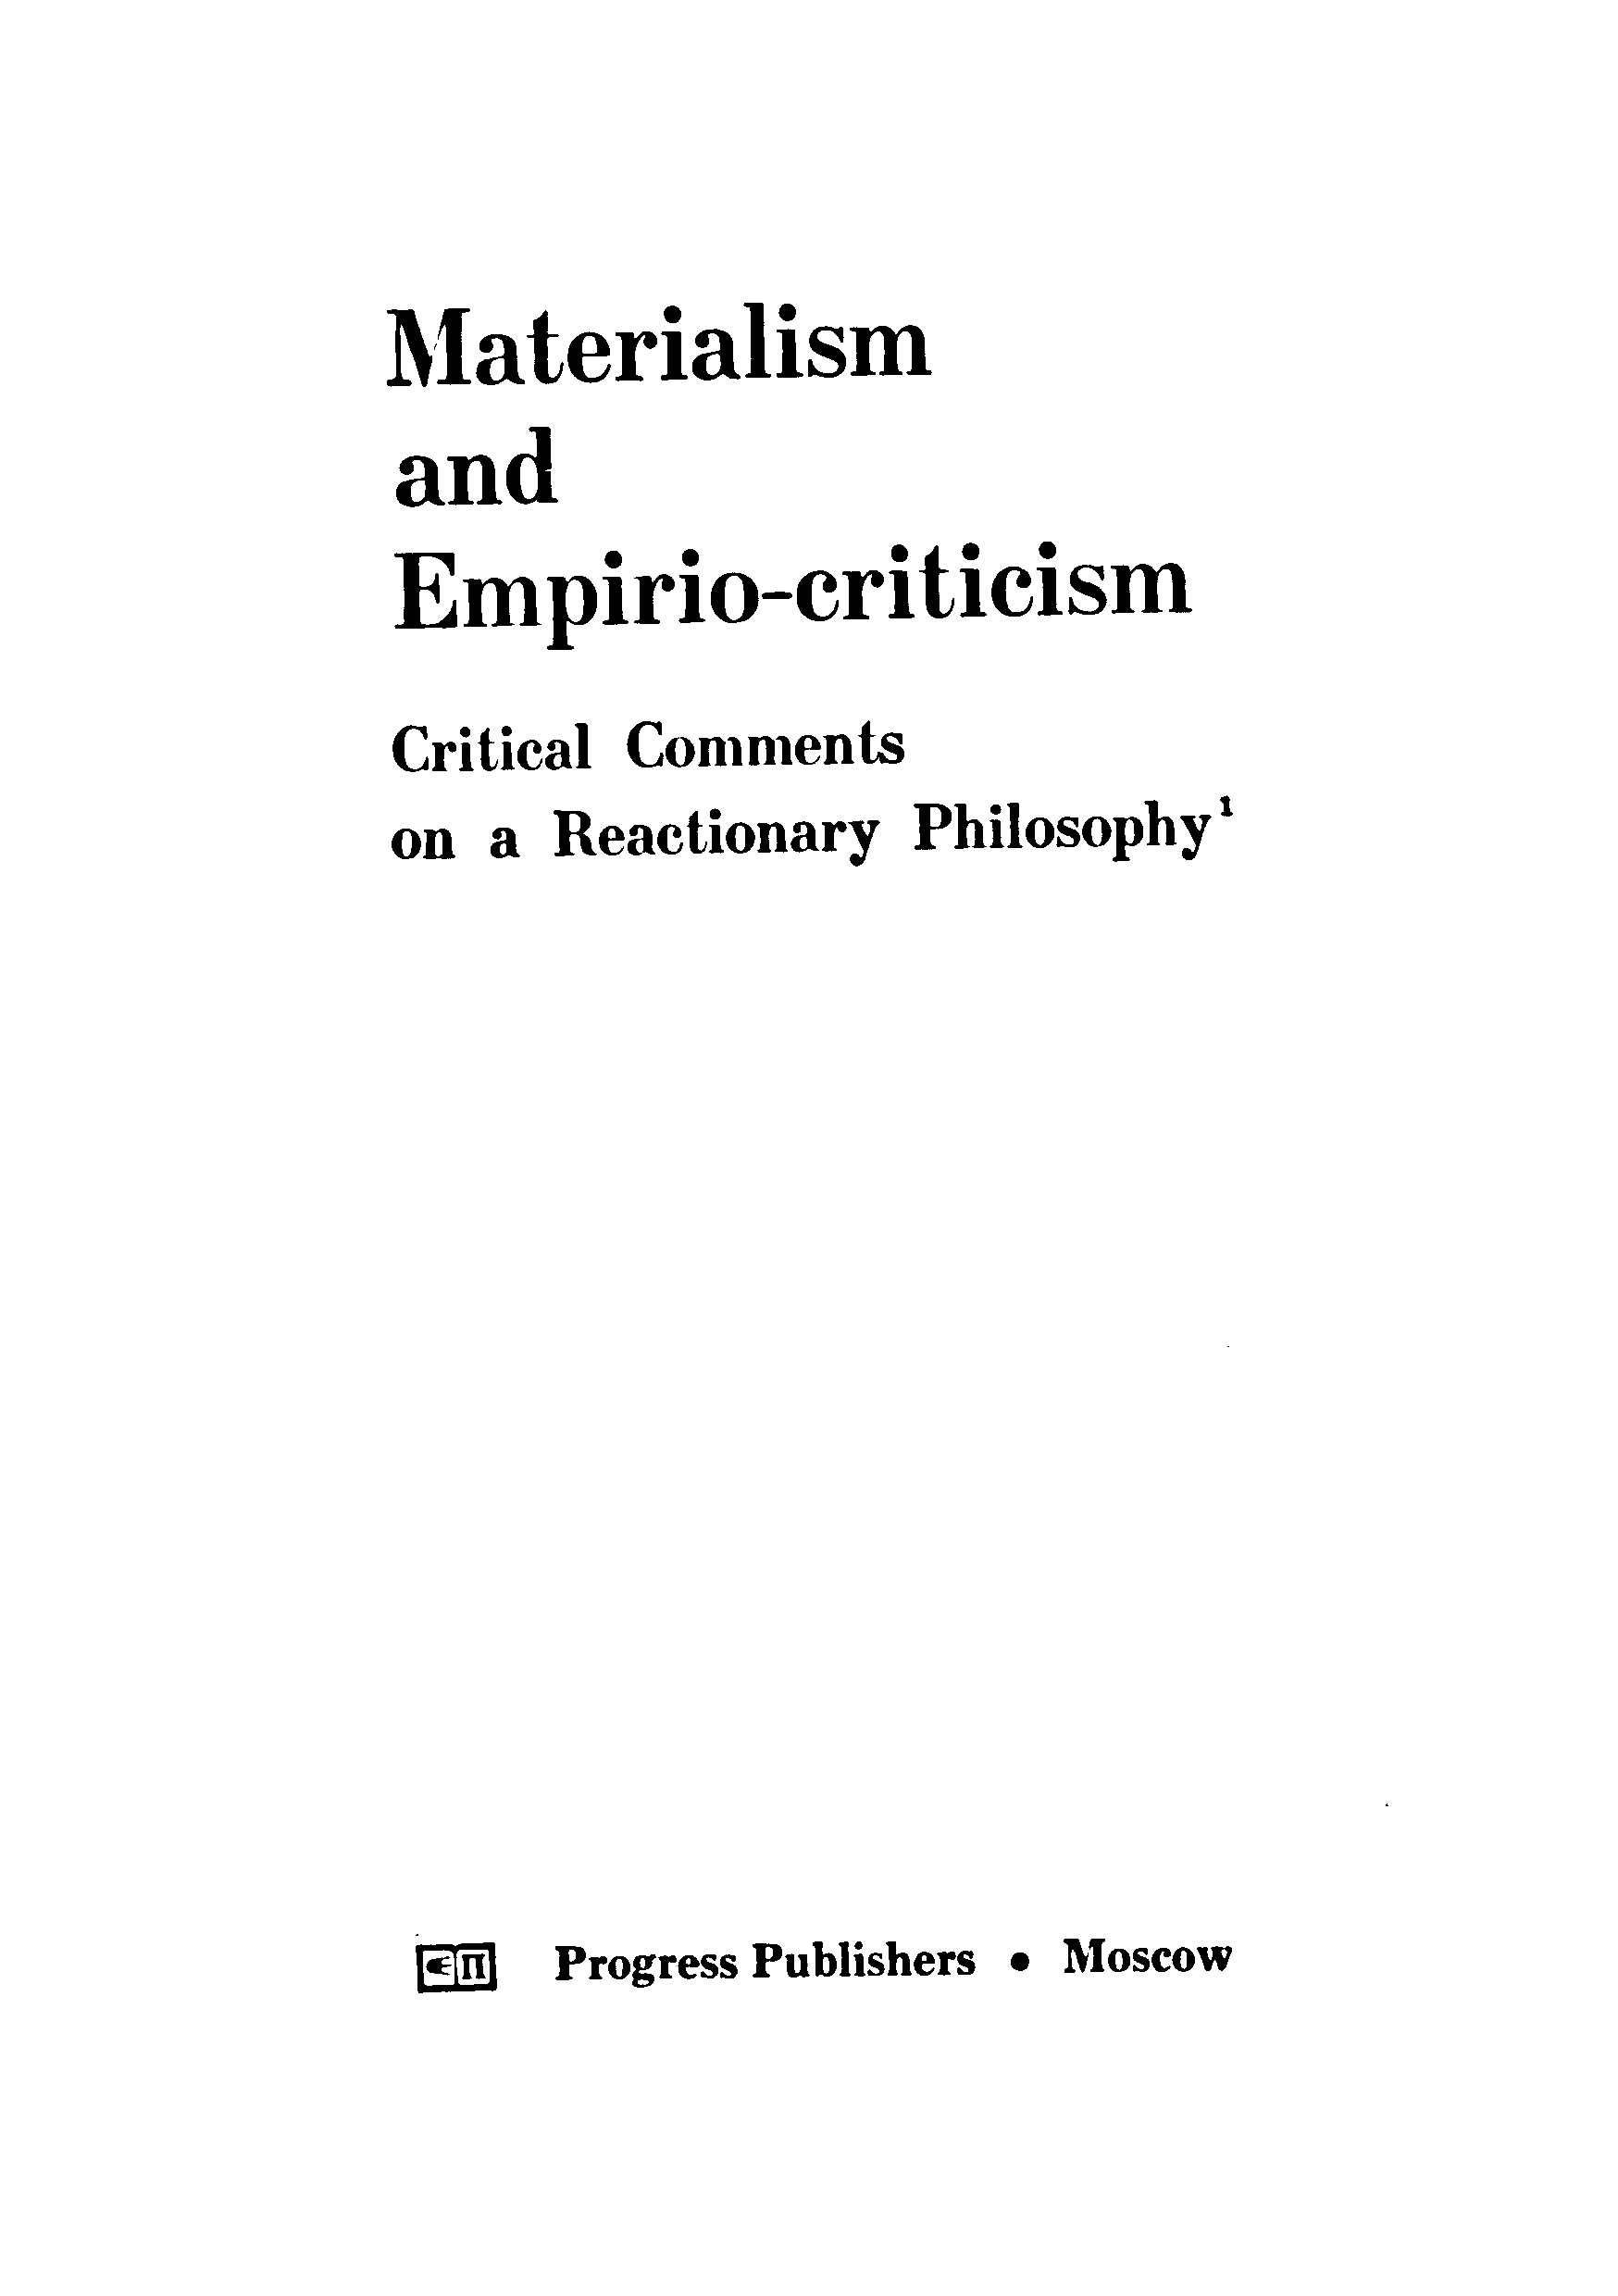  materialisam and empirio-criticism